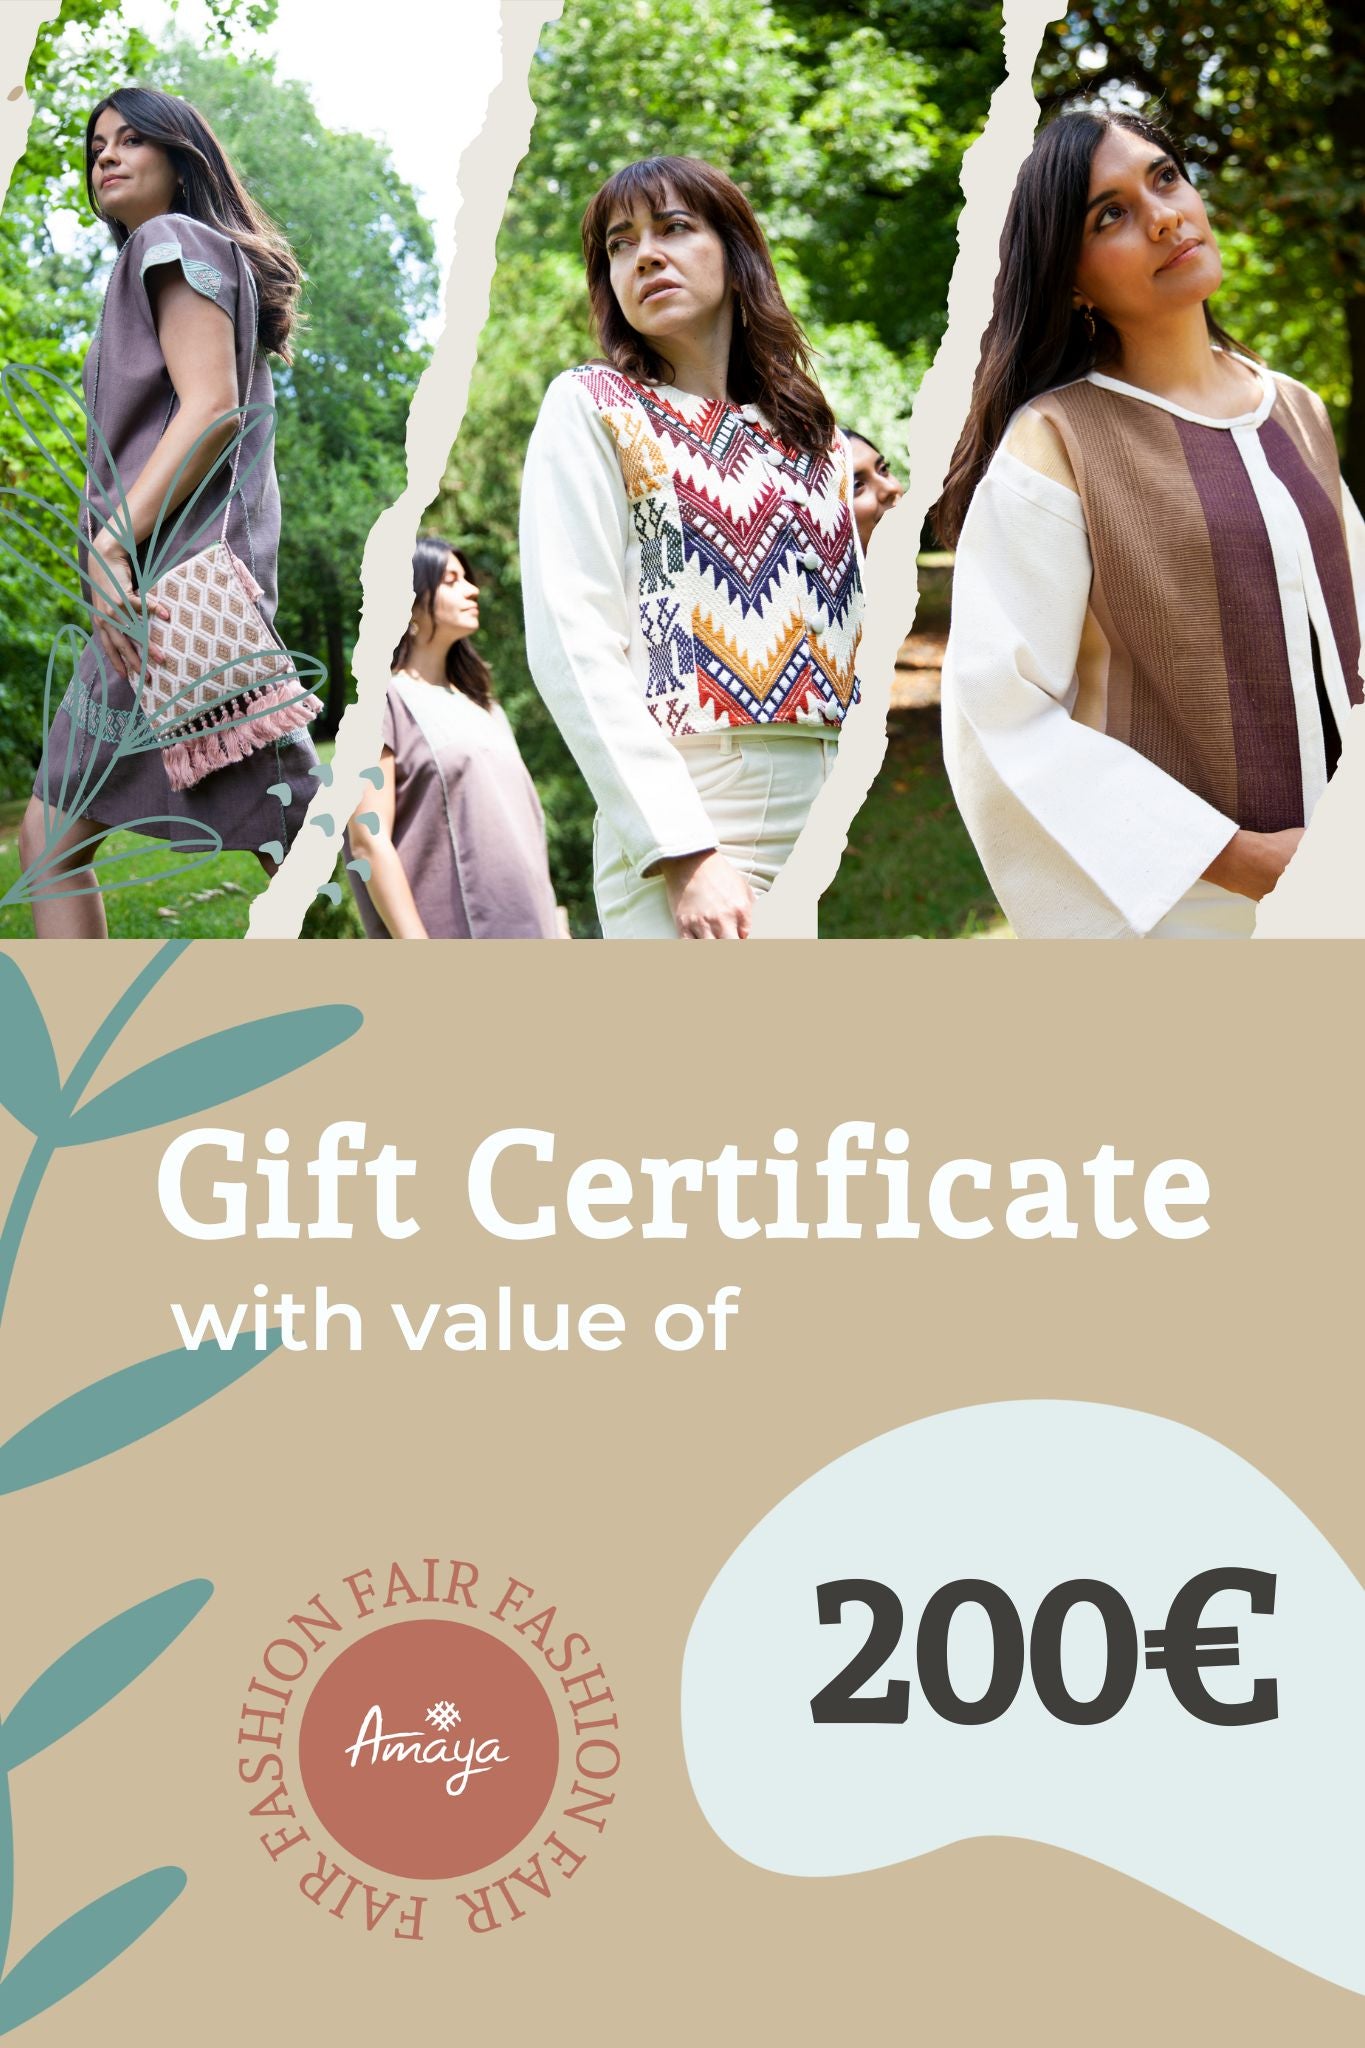 Amaya Clothing 200 Euro Gift Certificate